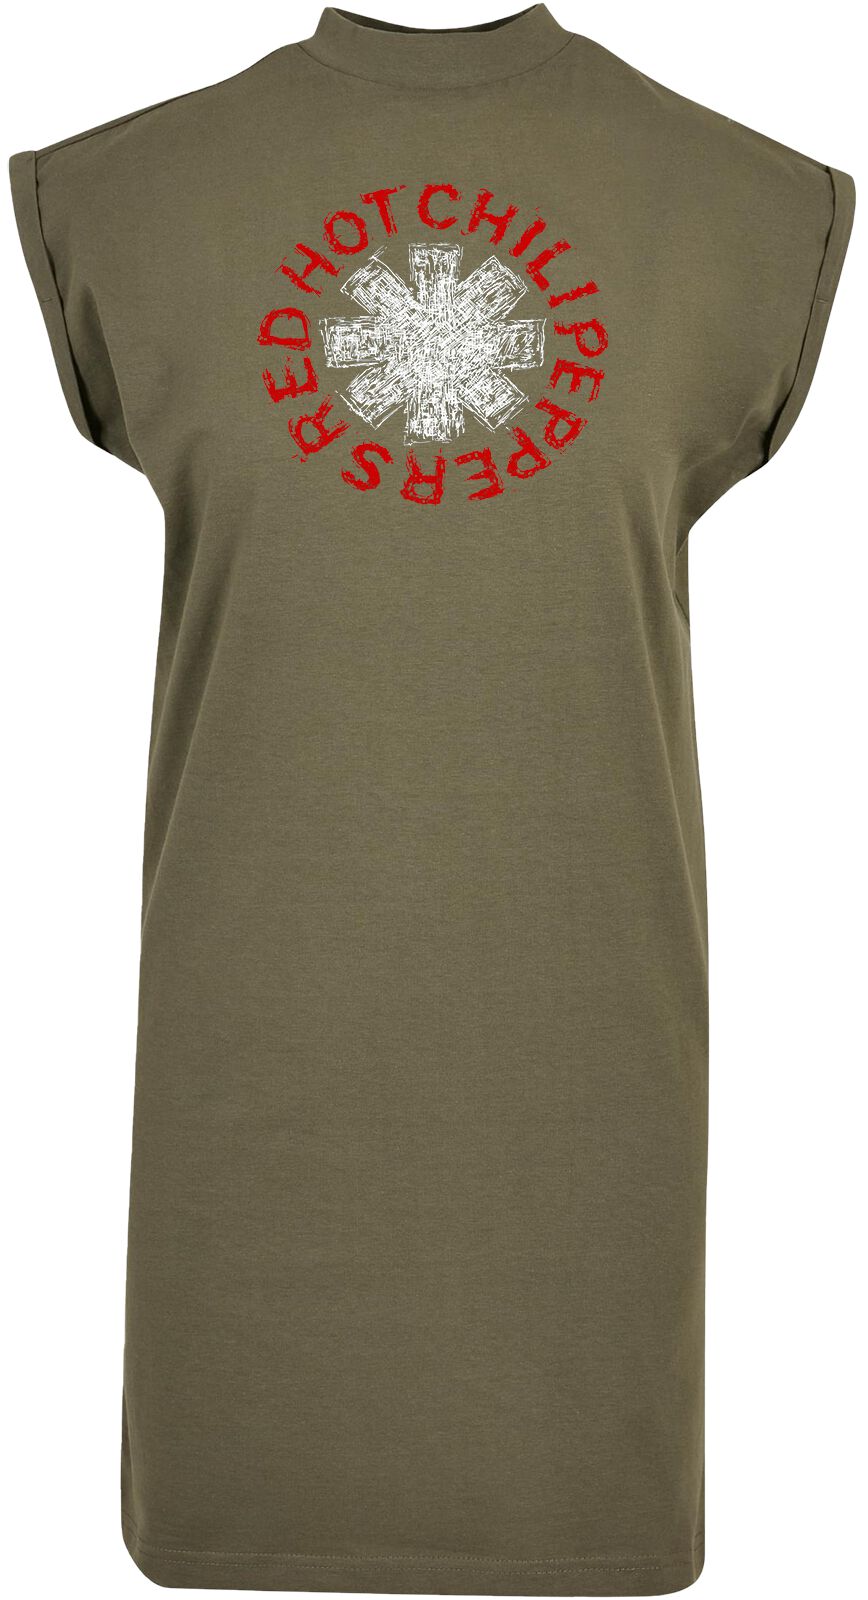 Red Hot Chili Peppers Kleid knielang - Scrible Logo - M bis XL - für Damen - Größe M - oliv  - Lizenziertes Merchandise!